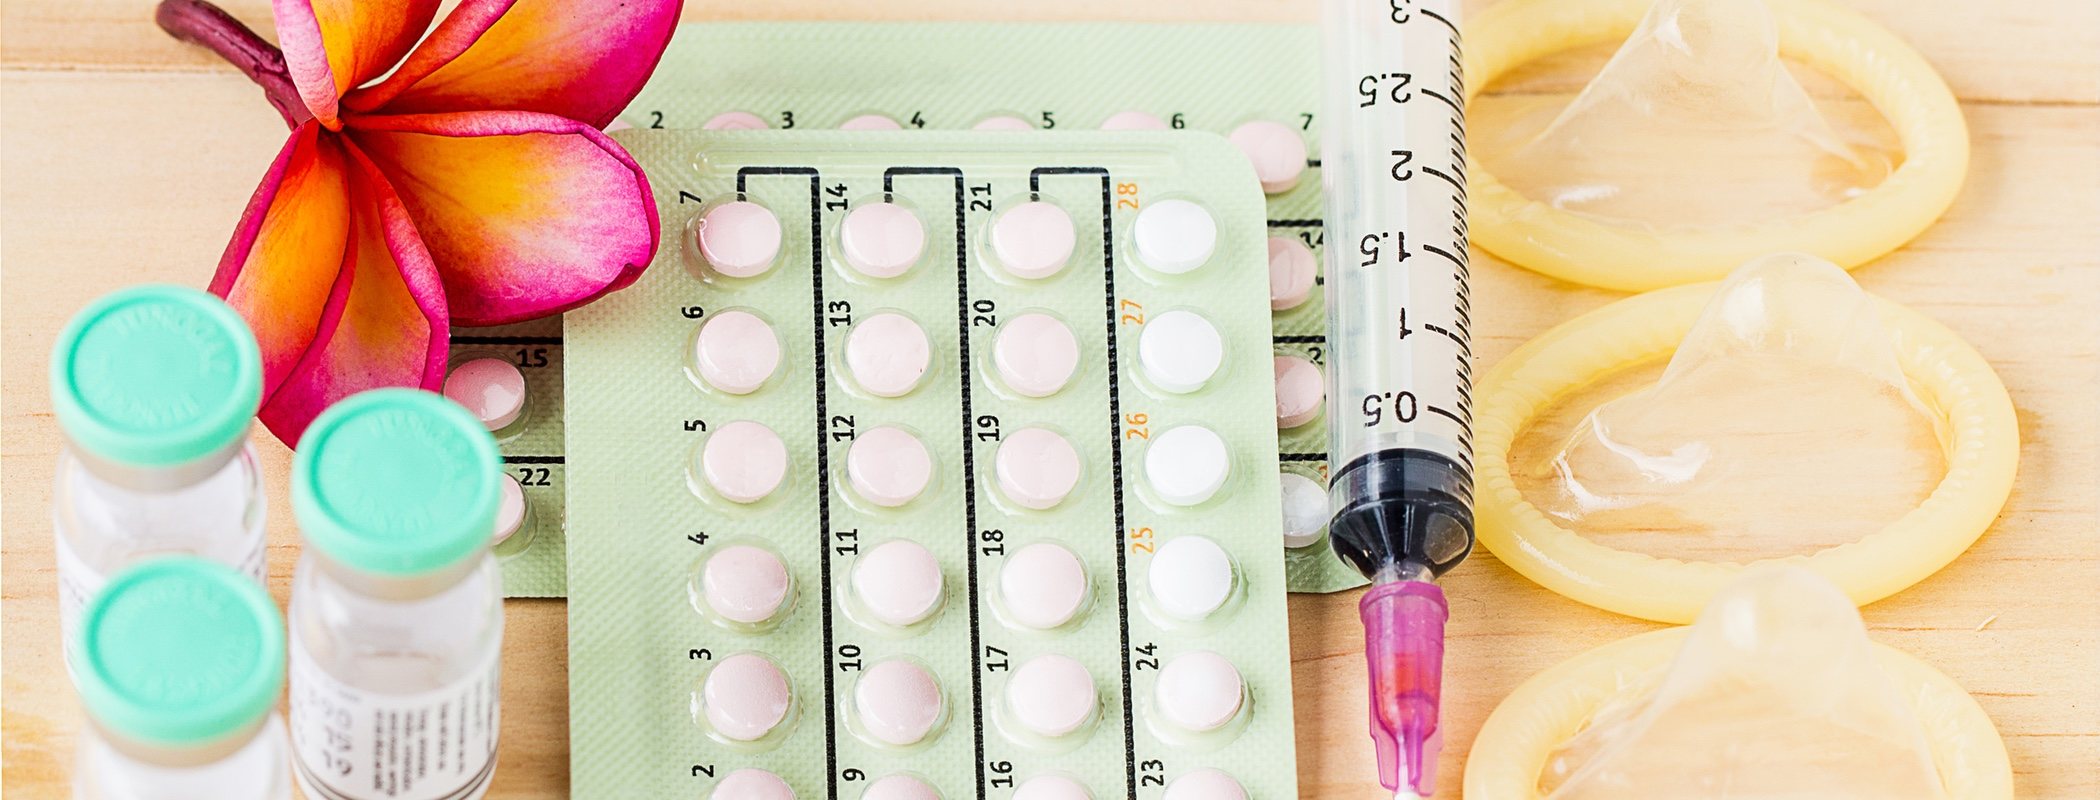 Anticonceptivo hormonal inyectable: todo lo que necesitas saber